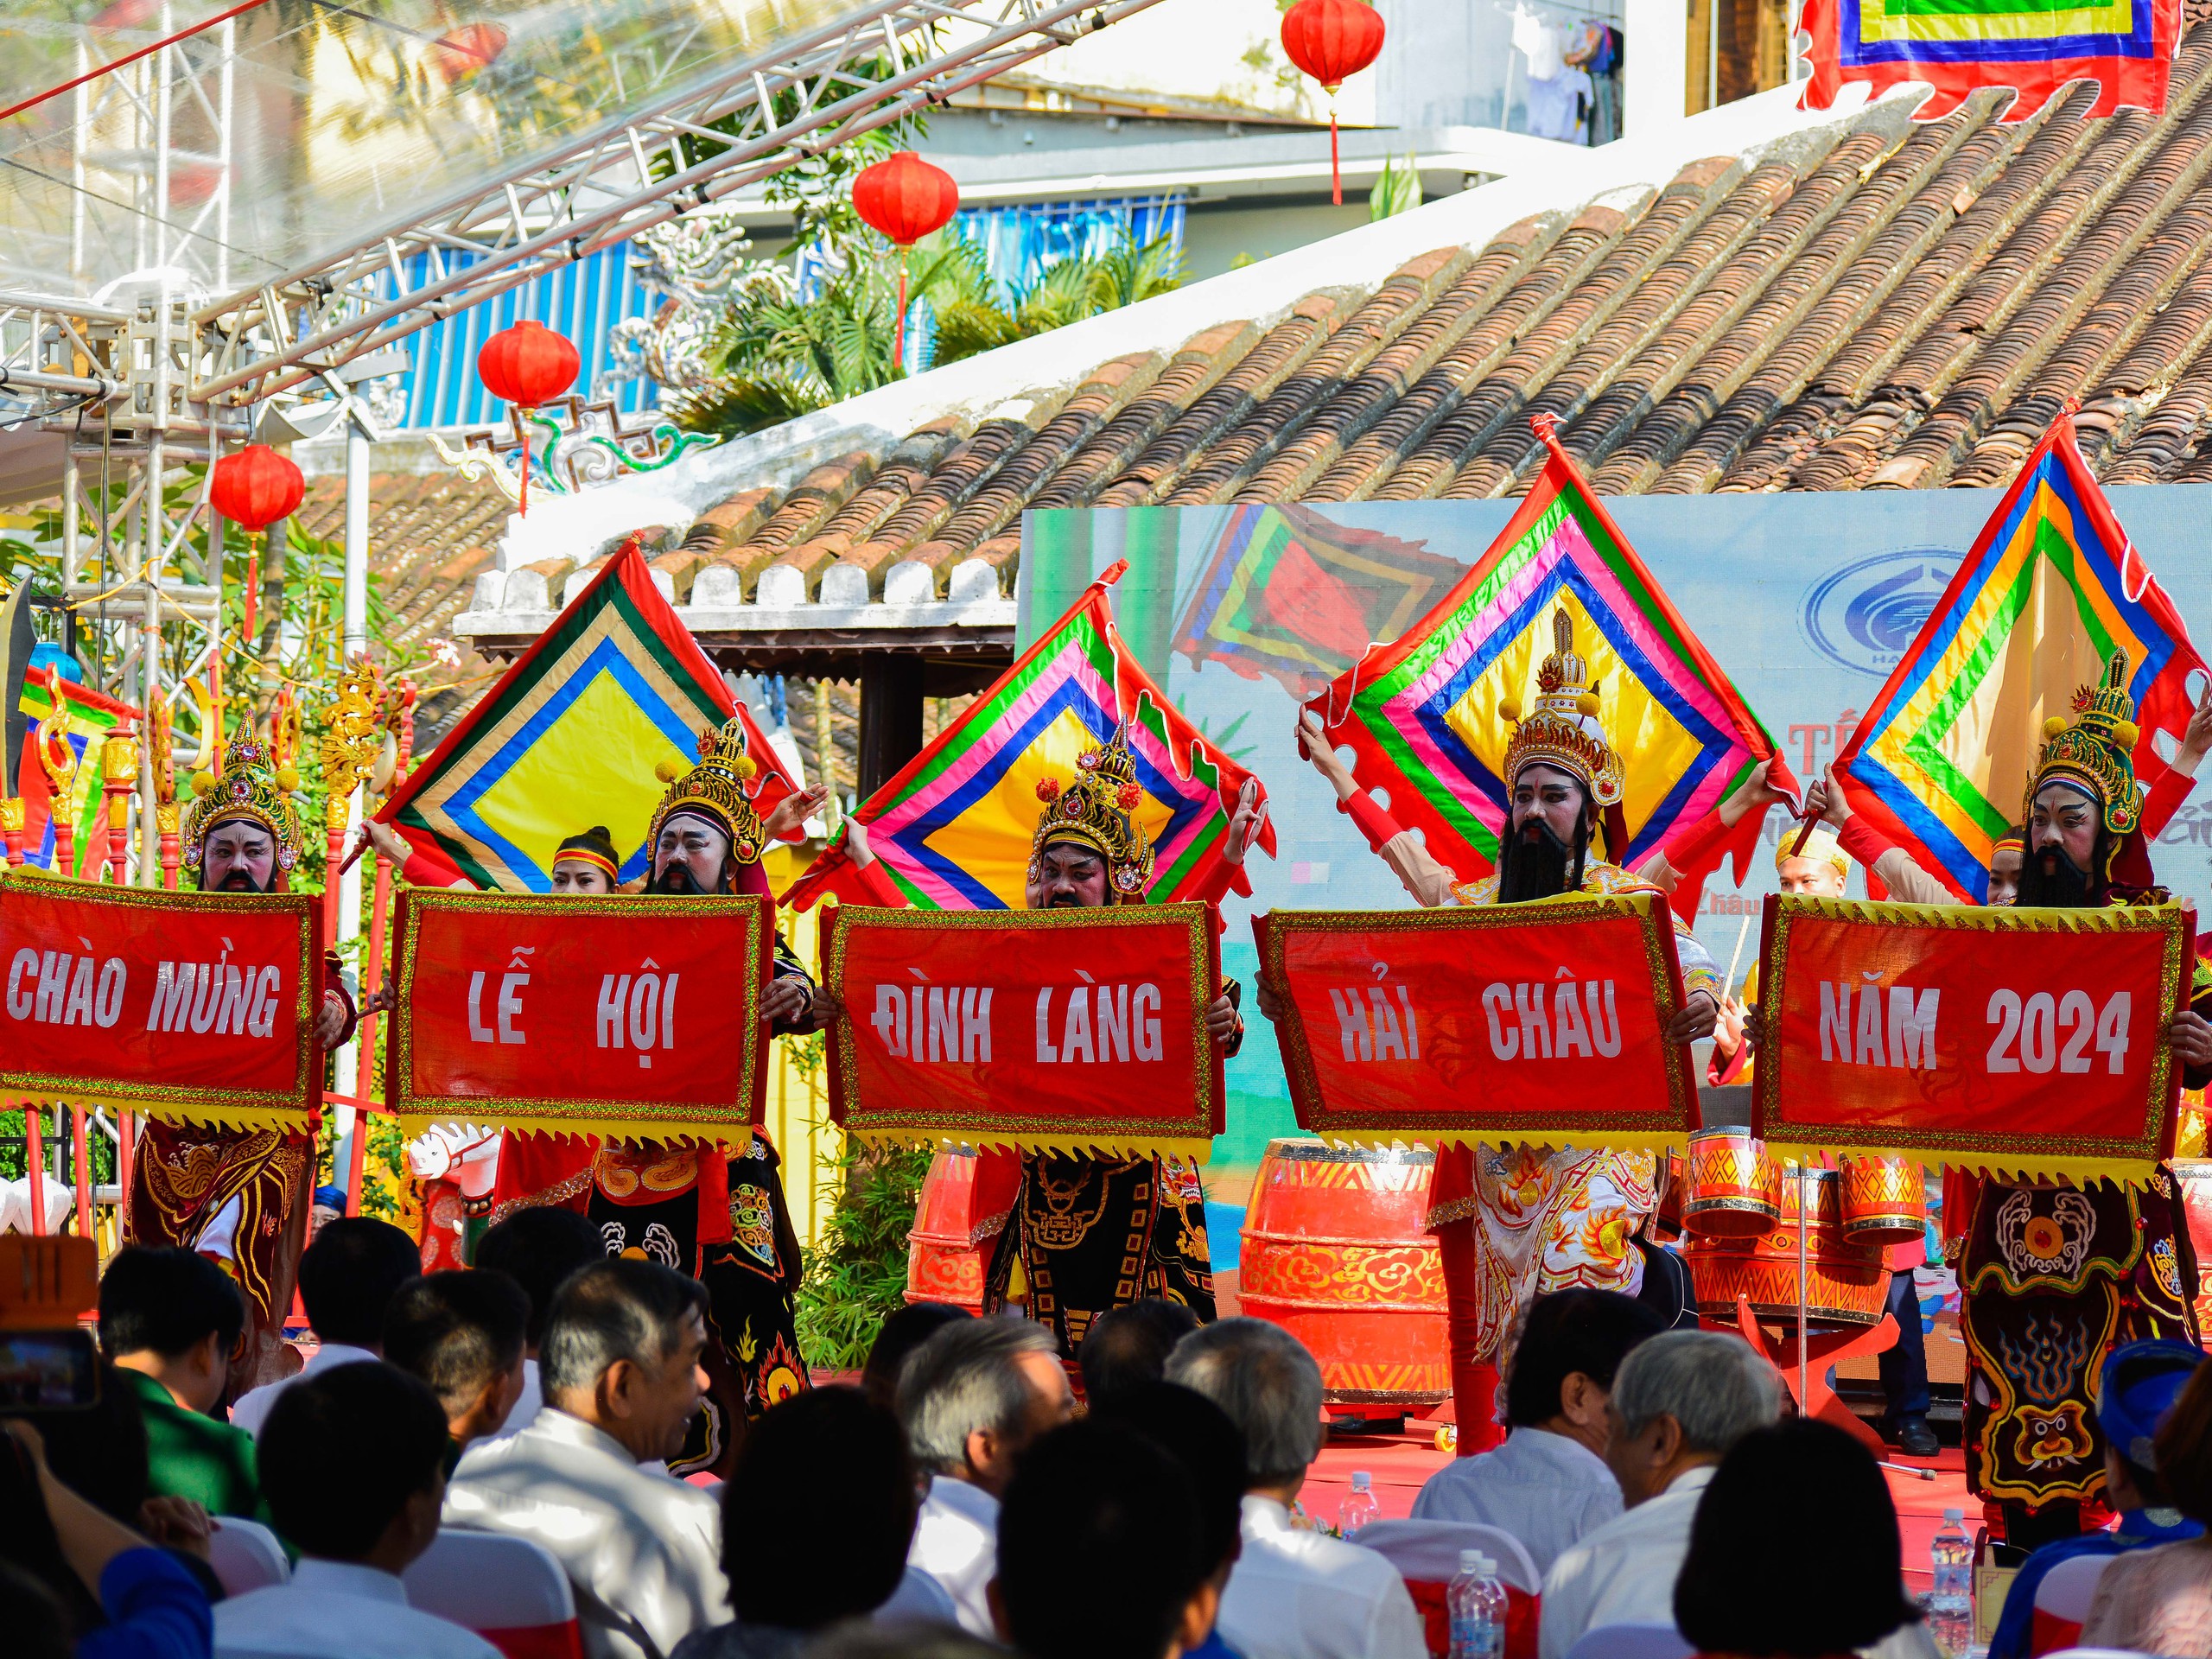 Lễ hội Đình làng Hải Châu là một trong những hoạt động văn hóa đặc sắc của TP.Đà Nẵng